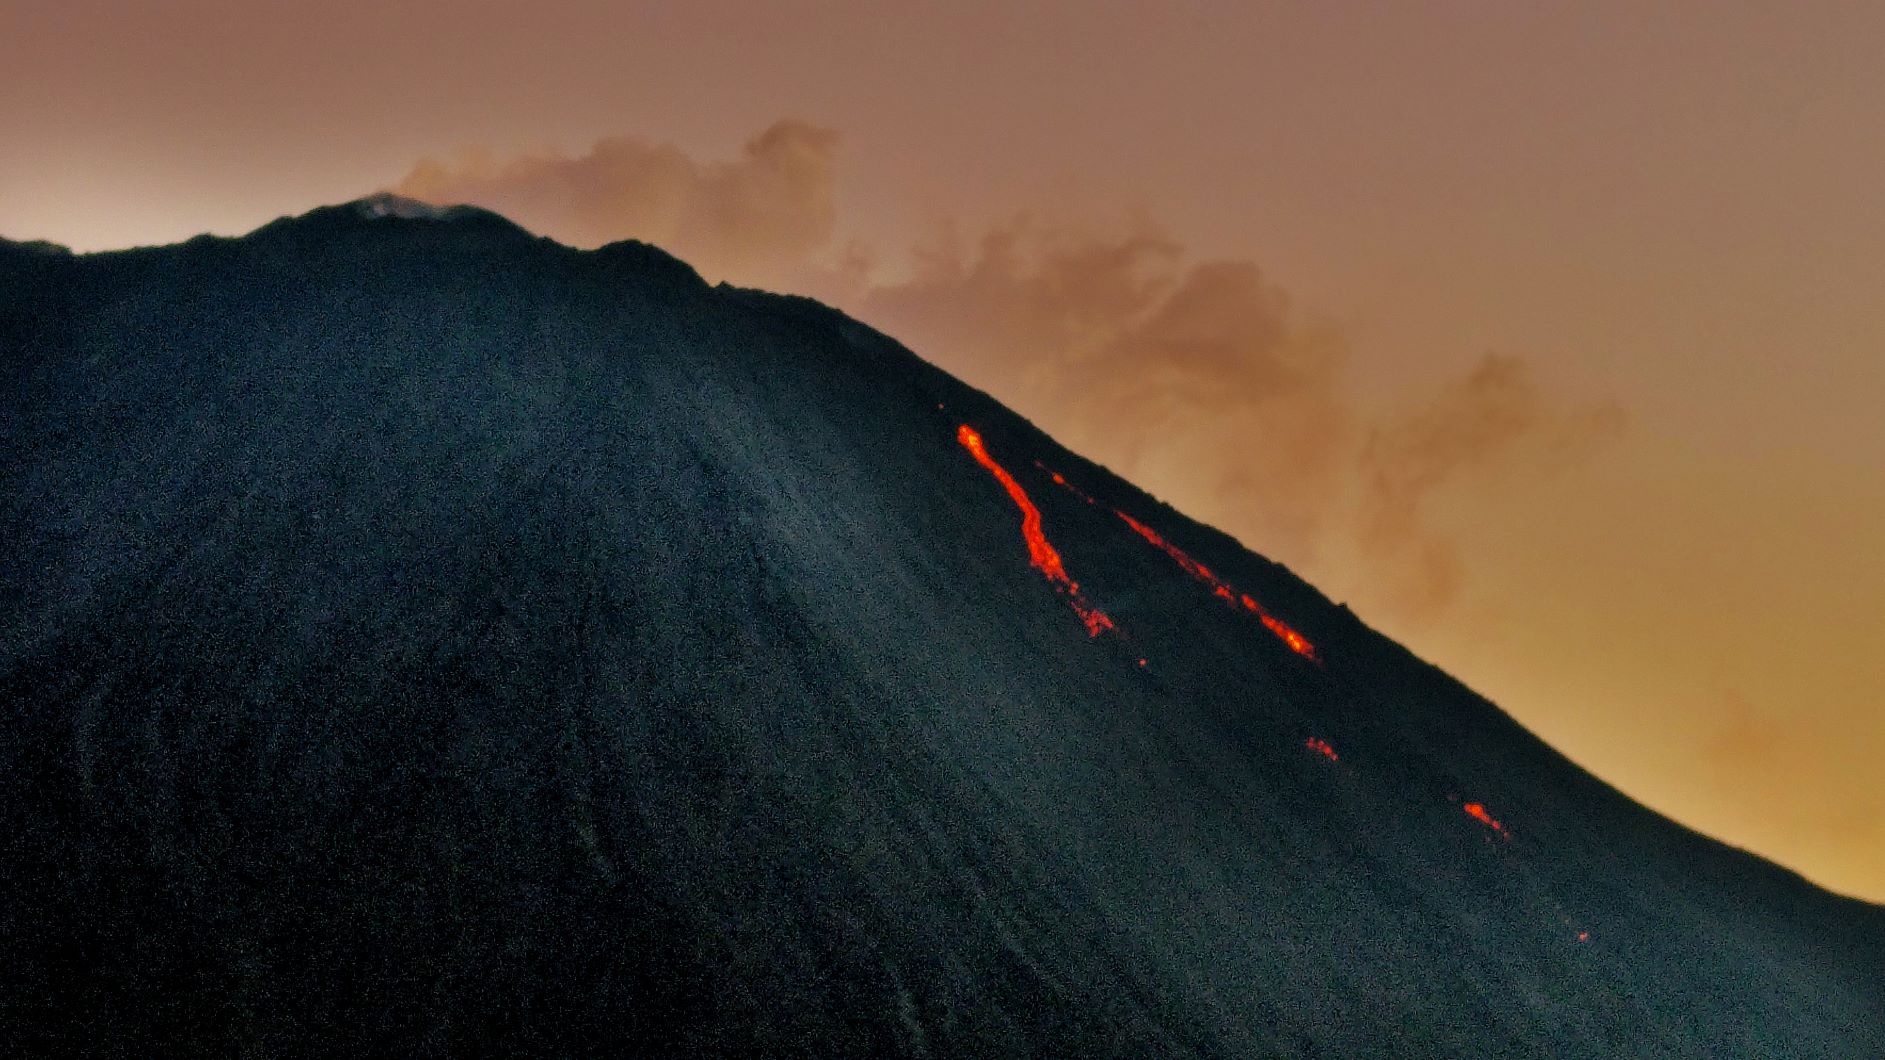 Volcano lava